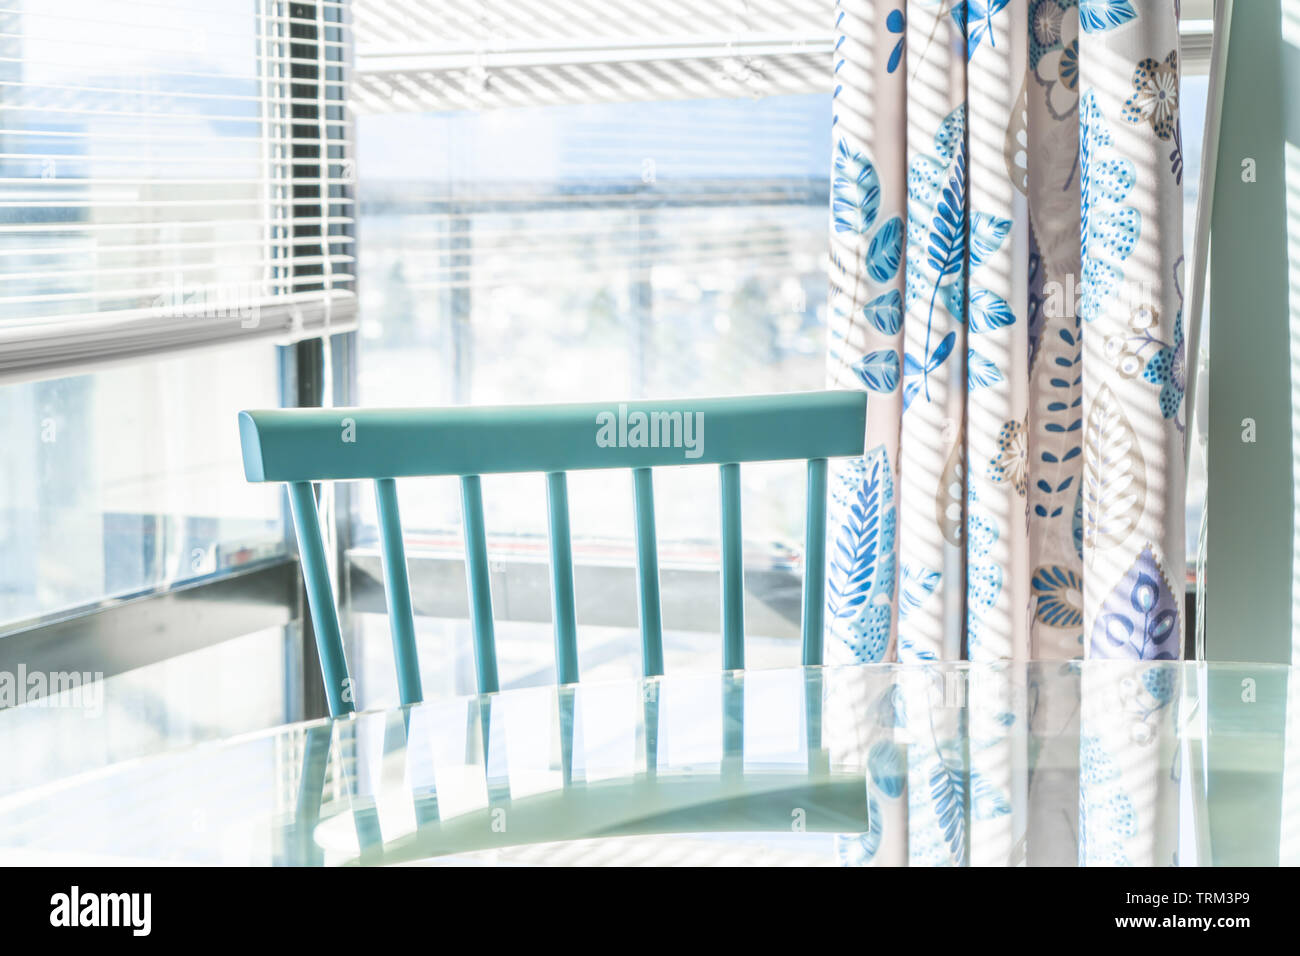 Coin repas lumineux contre une baie vitrée, avec un traditionnel bleu chaise et table en verre. Décoration d'appariement dans l'arrière-plan. Banque D'Images